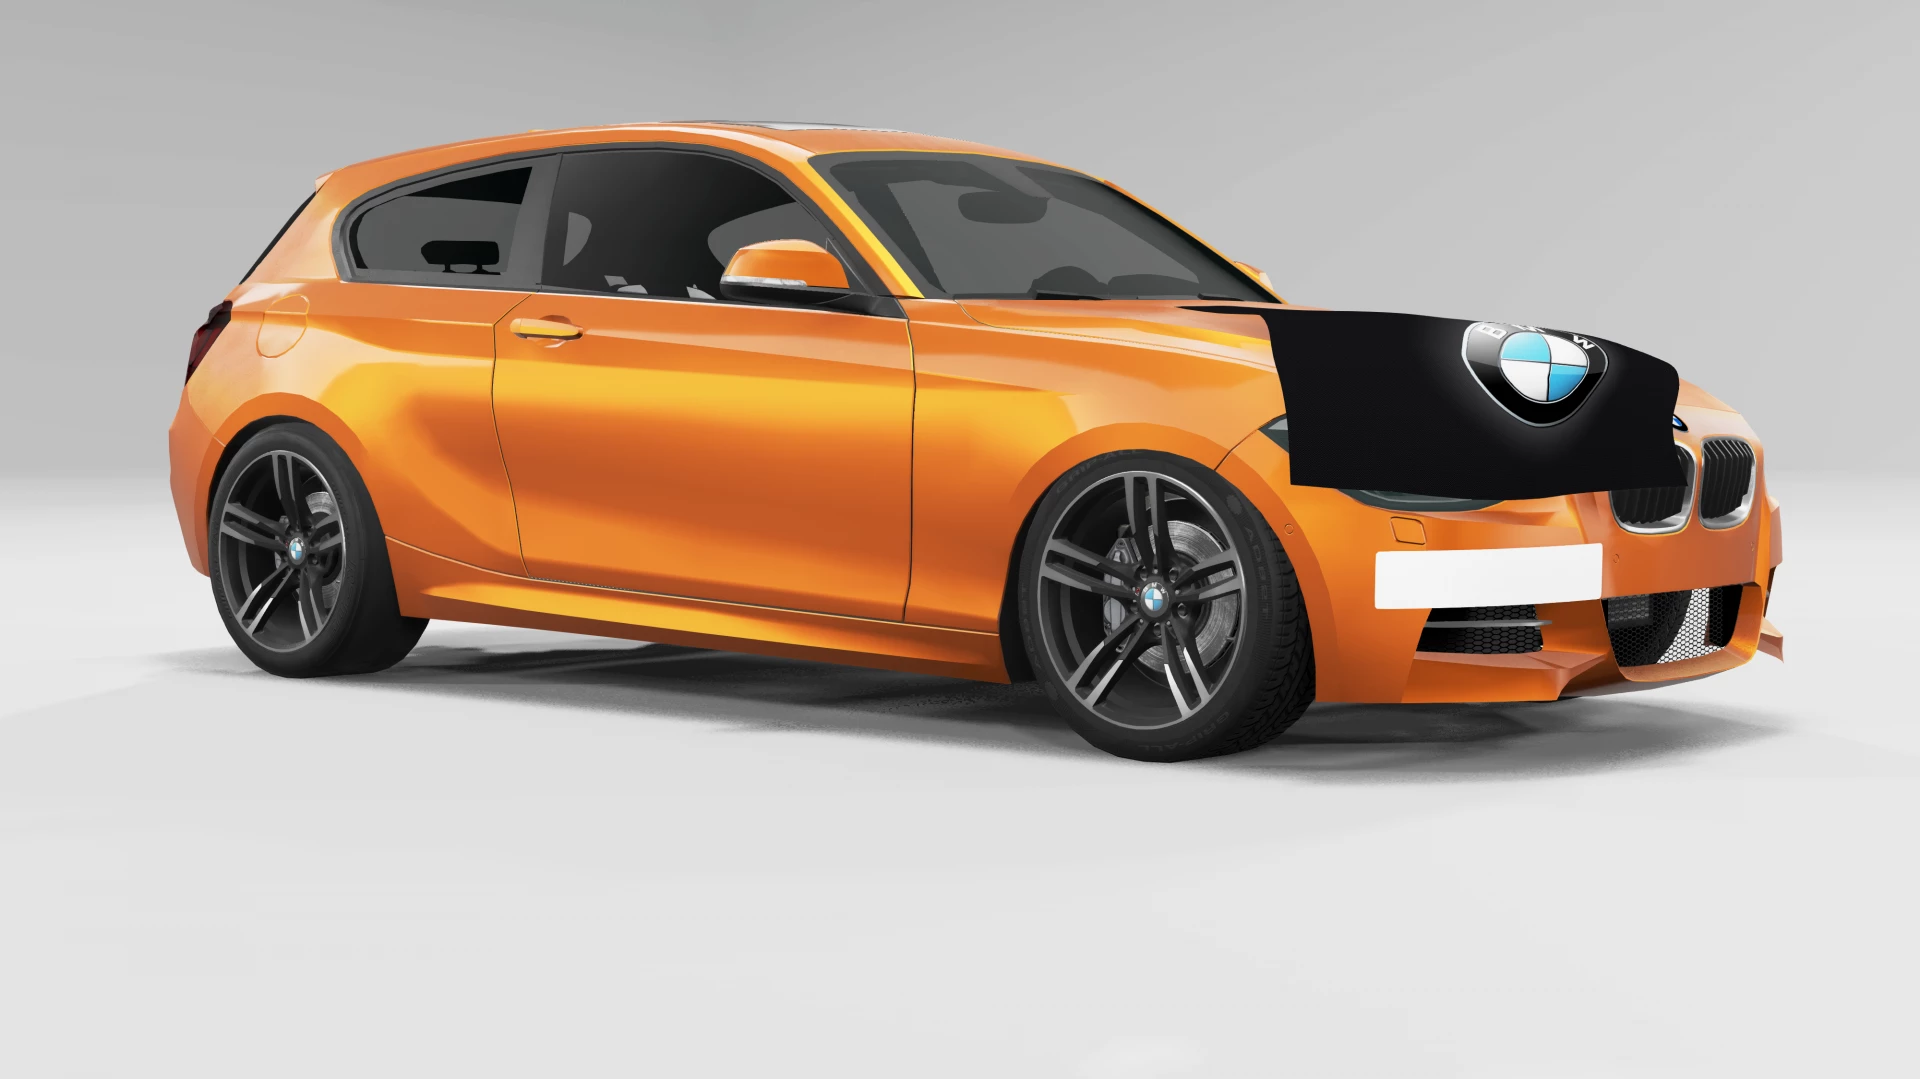 BMW 135i Coupe 2009 - Simulator Games Mods